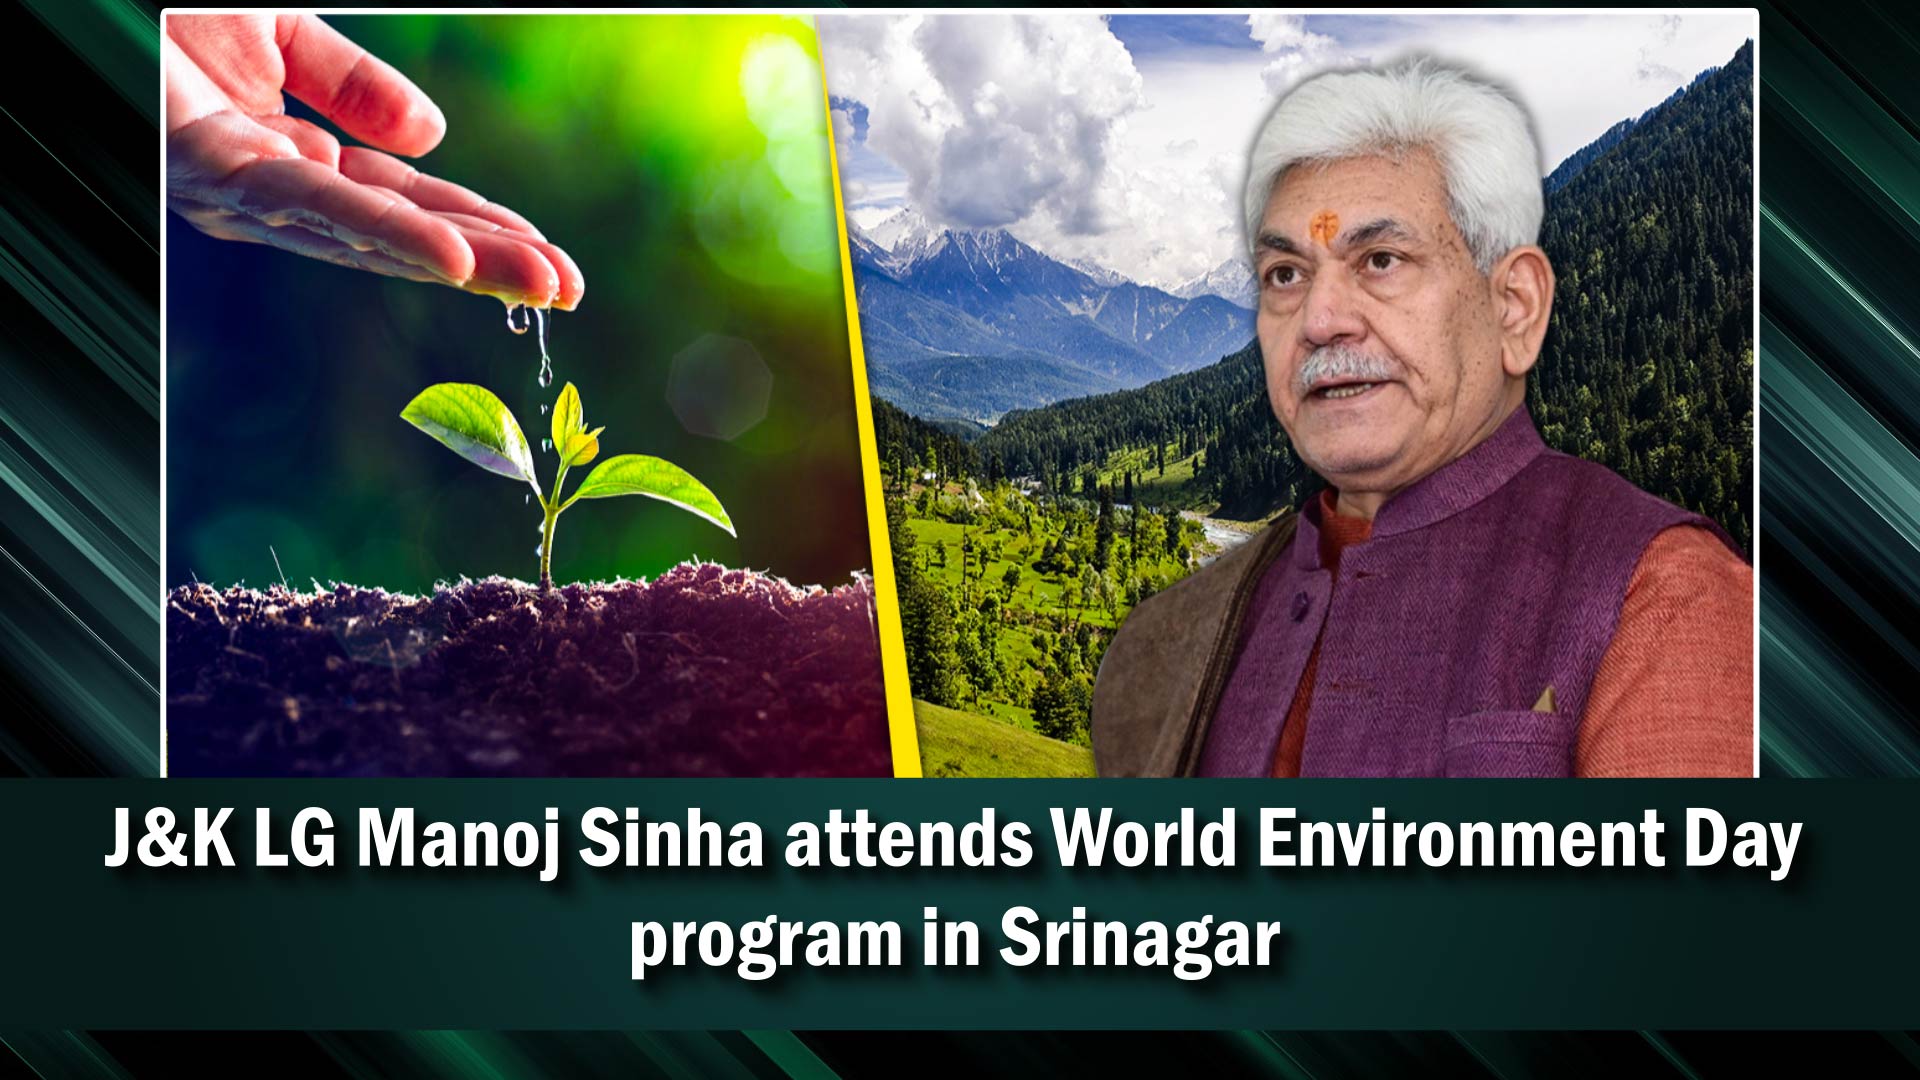 J&K LG Manoj Sinha attends World Environment Day program in Srinagar